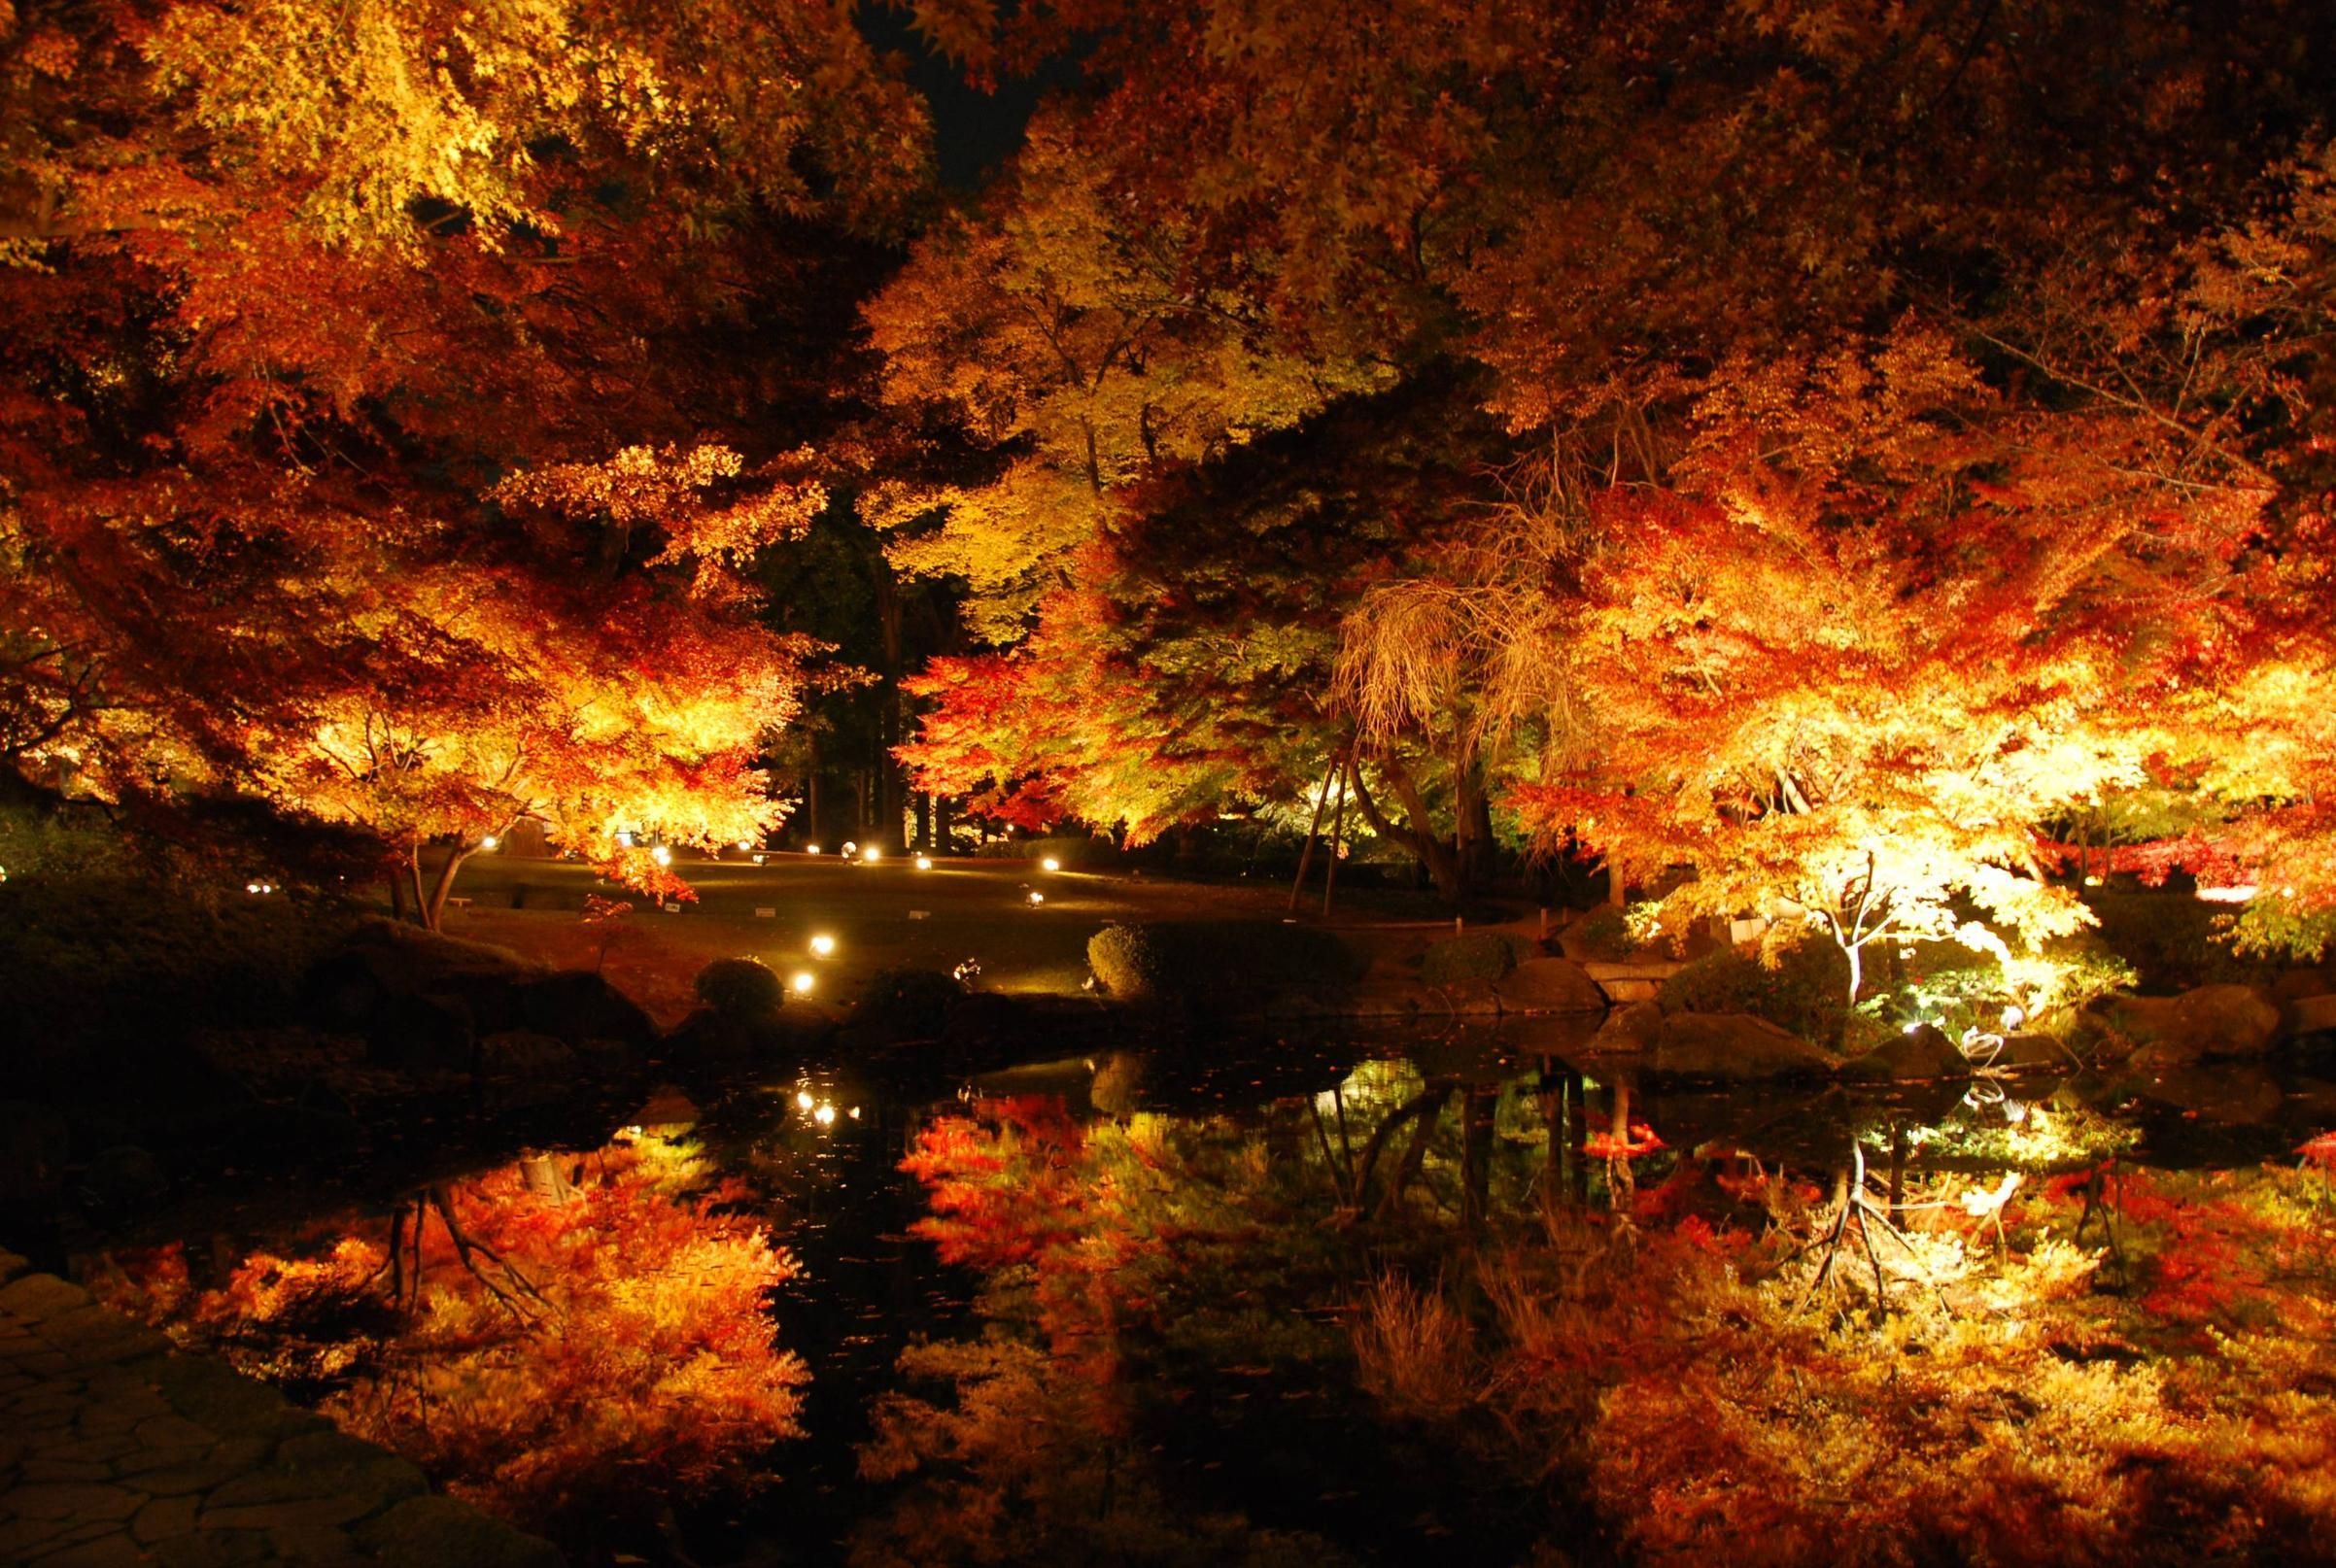 Autumn at Night. Autumn night, Picture, Beautiful photo